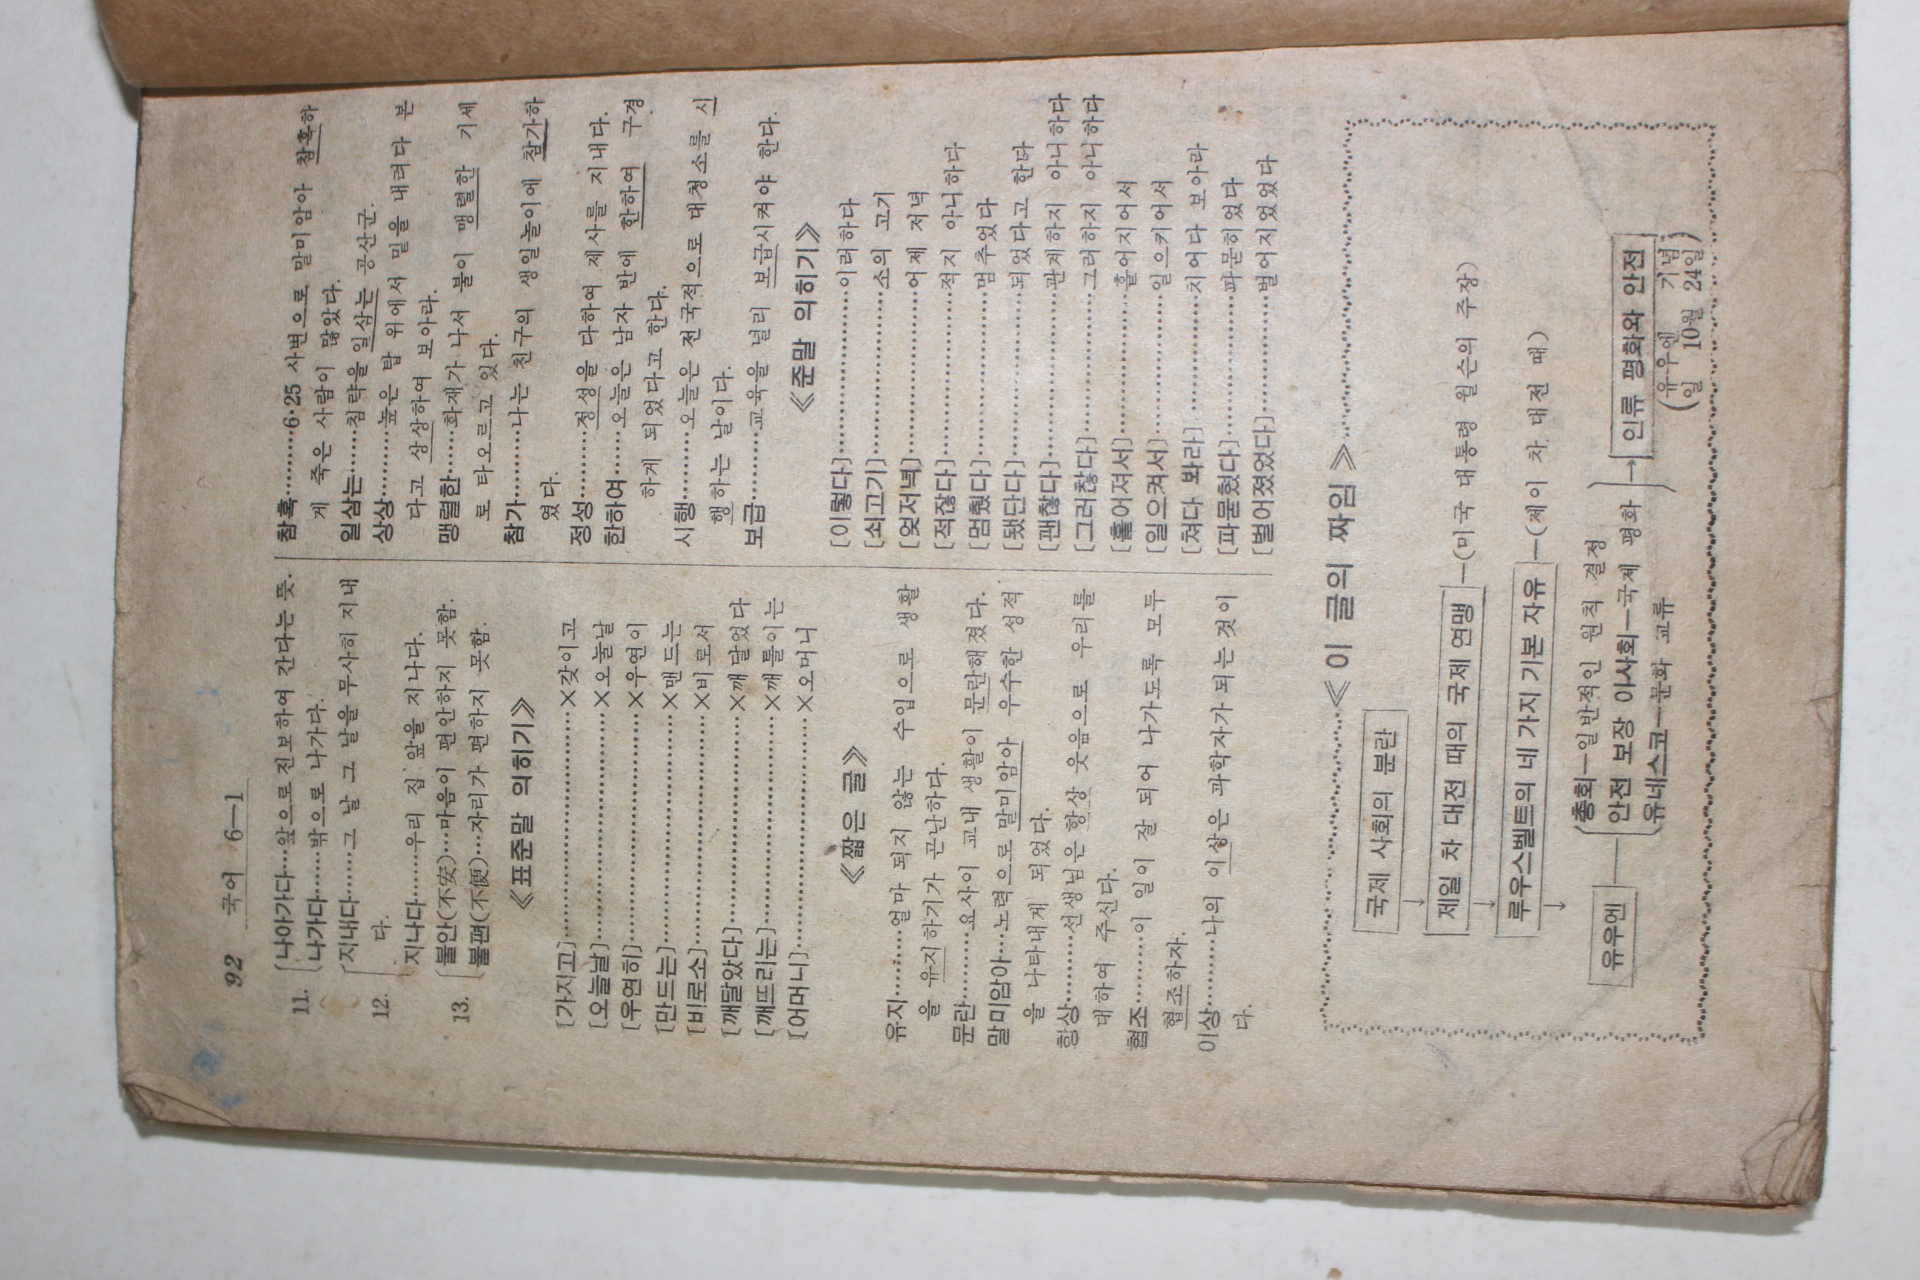 1959년 새 교과서에 의한 전과지도서 6-1 국어